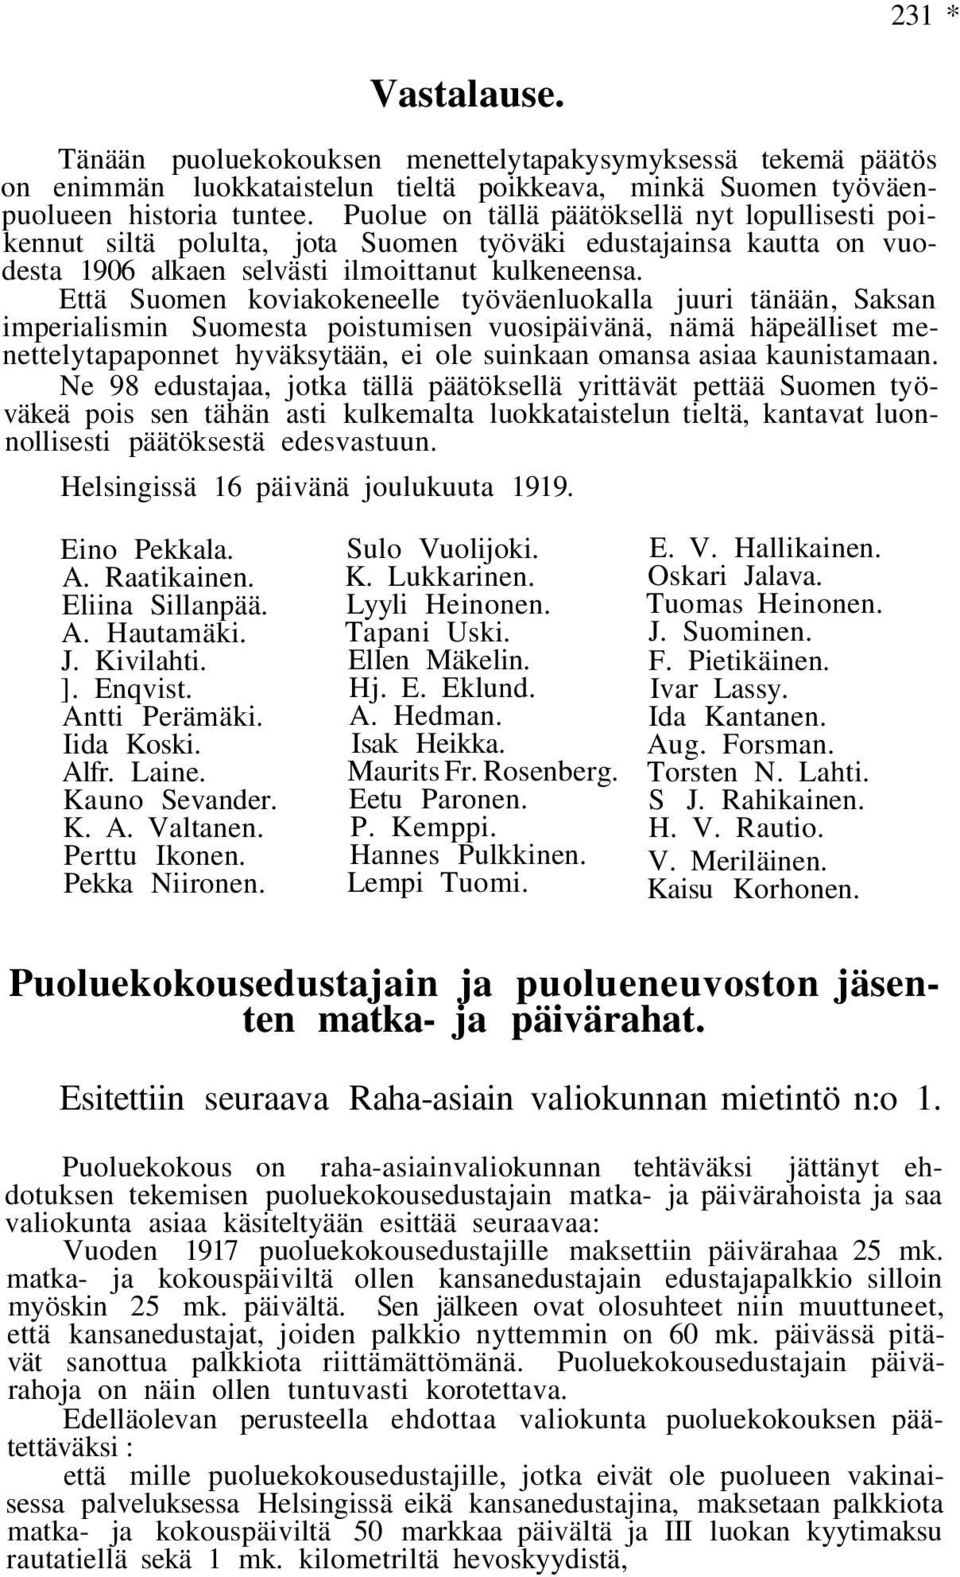 Että Suomen koviakokeneelle työväenluokalla juuri tänään, Saksan imperialismin Suomesta poistumisen vuosipäivänä, nämä häpeälliset menettelytapaponnet hyväksytään, ei ole suinkaan omansa asiaa